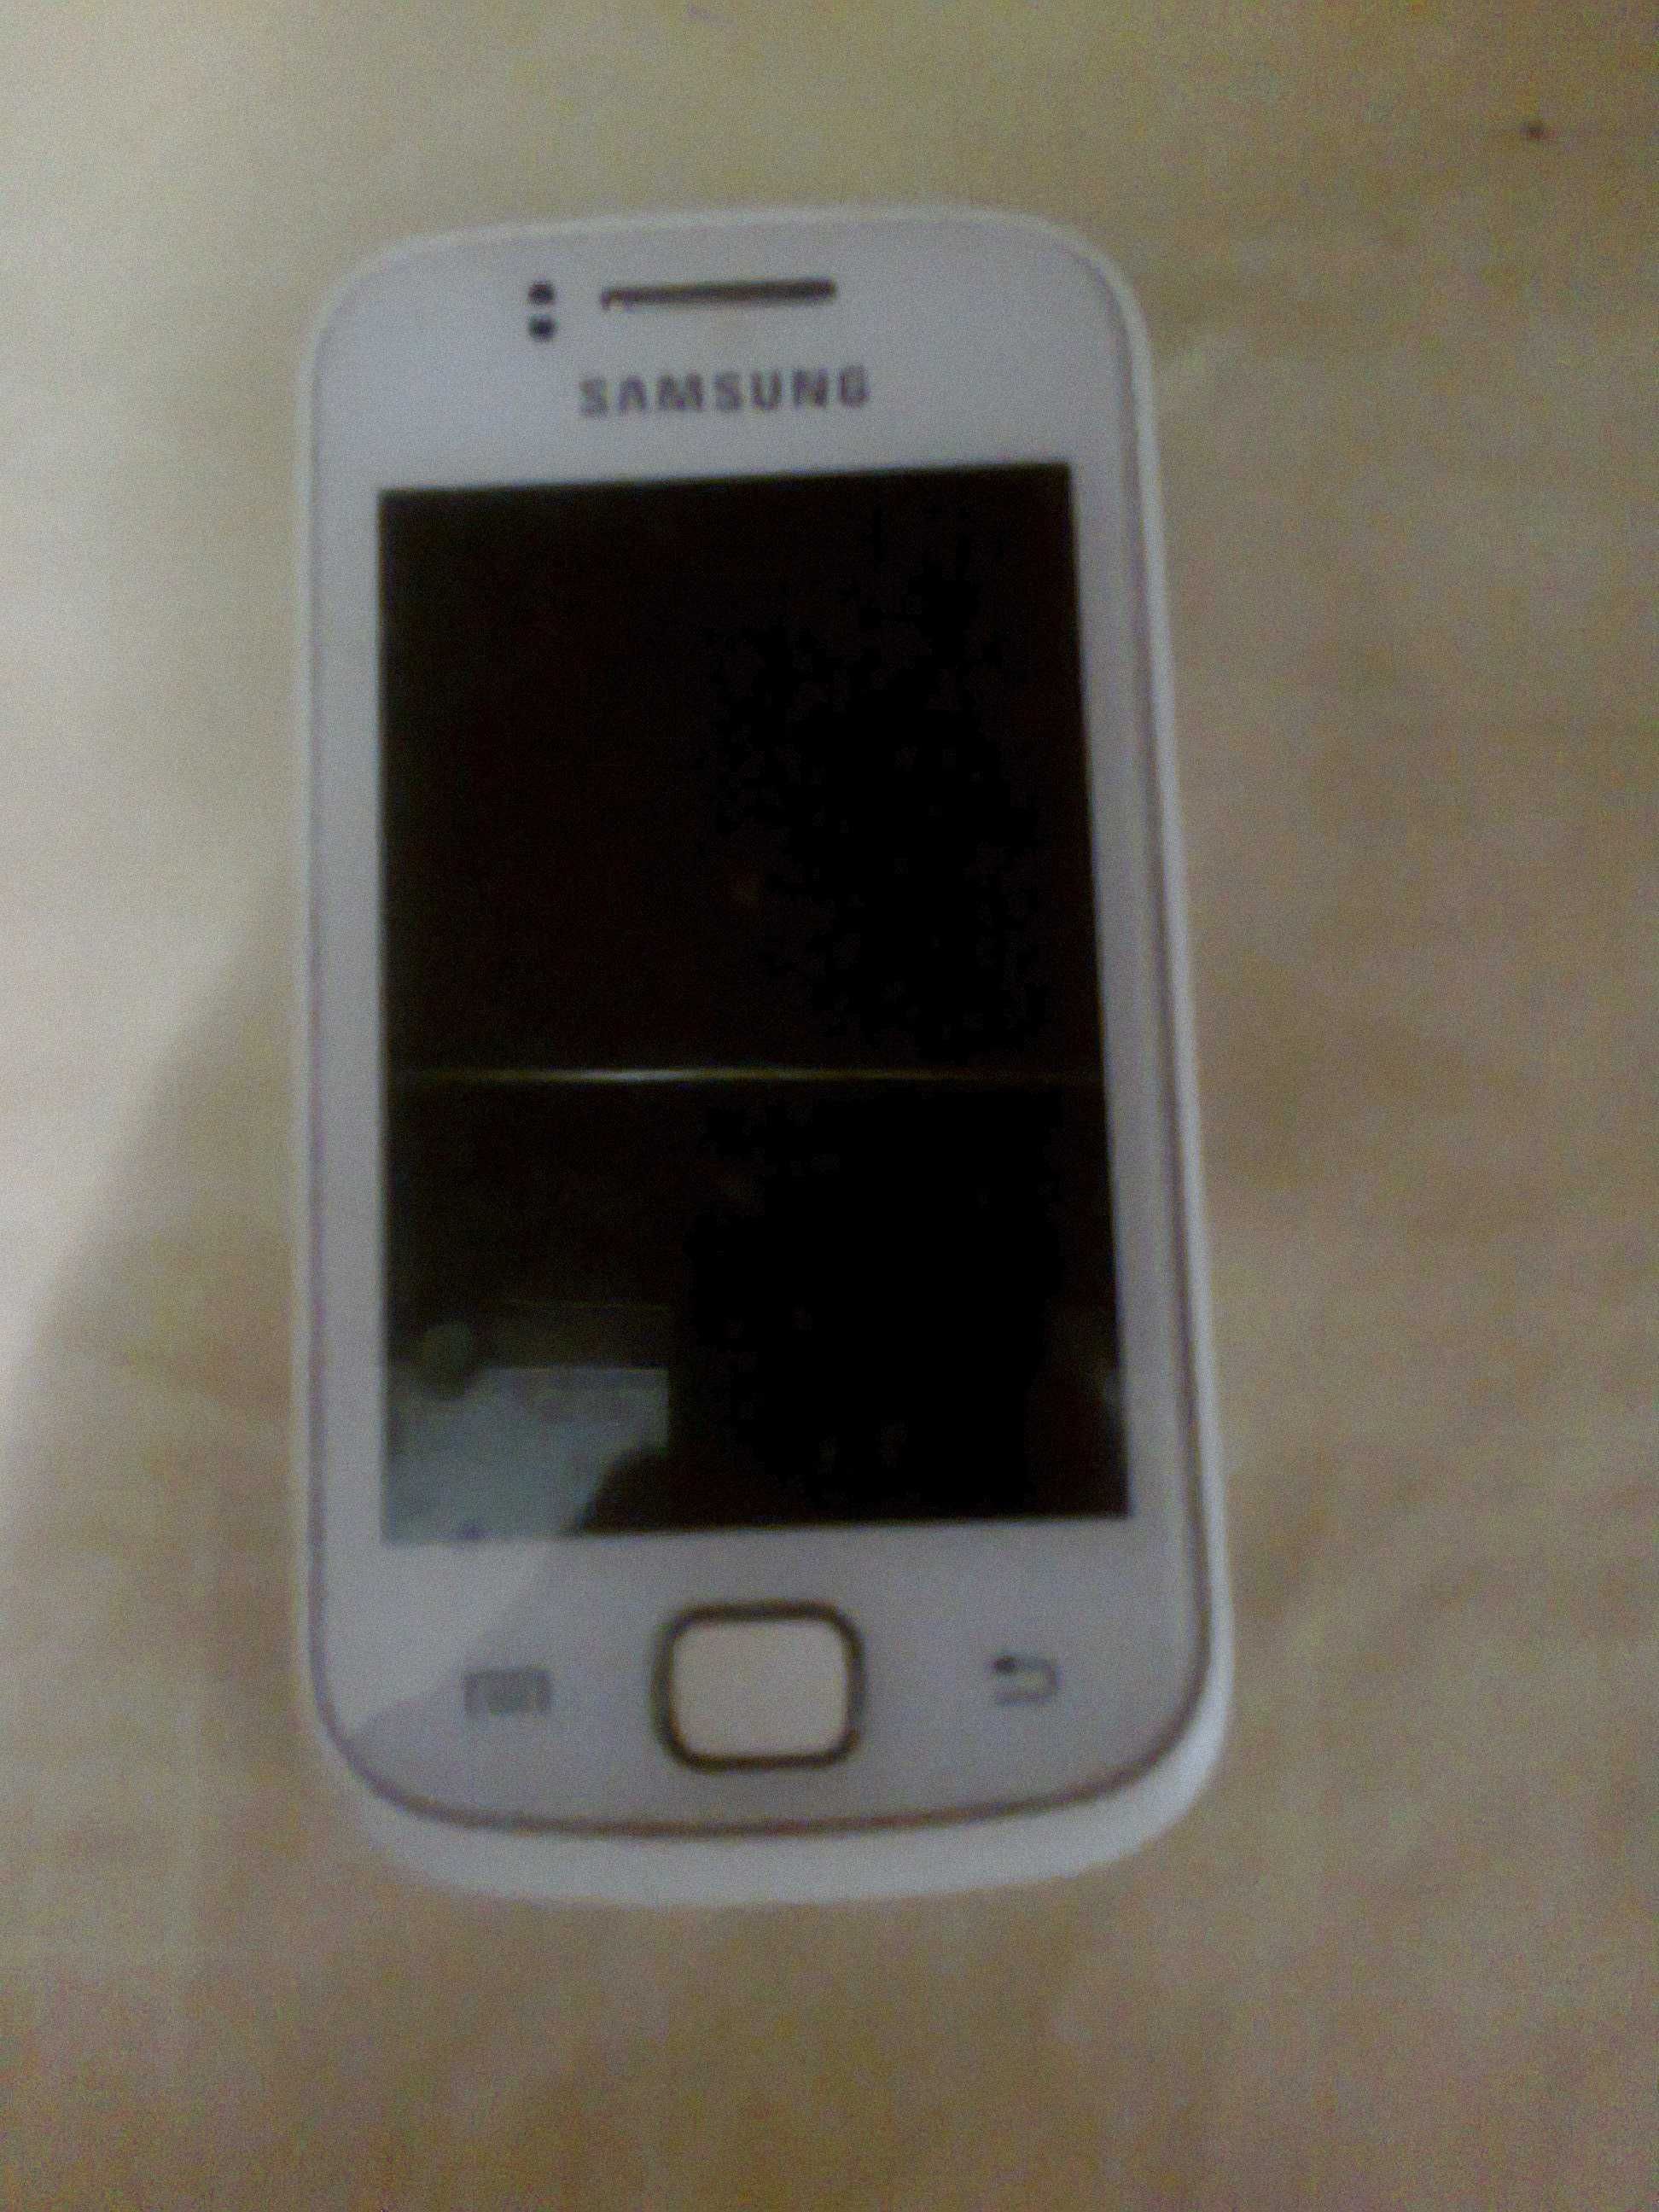 Samsung Galaxy Gio GT-S5660 Не пересылаю